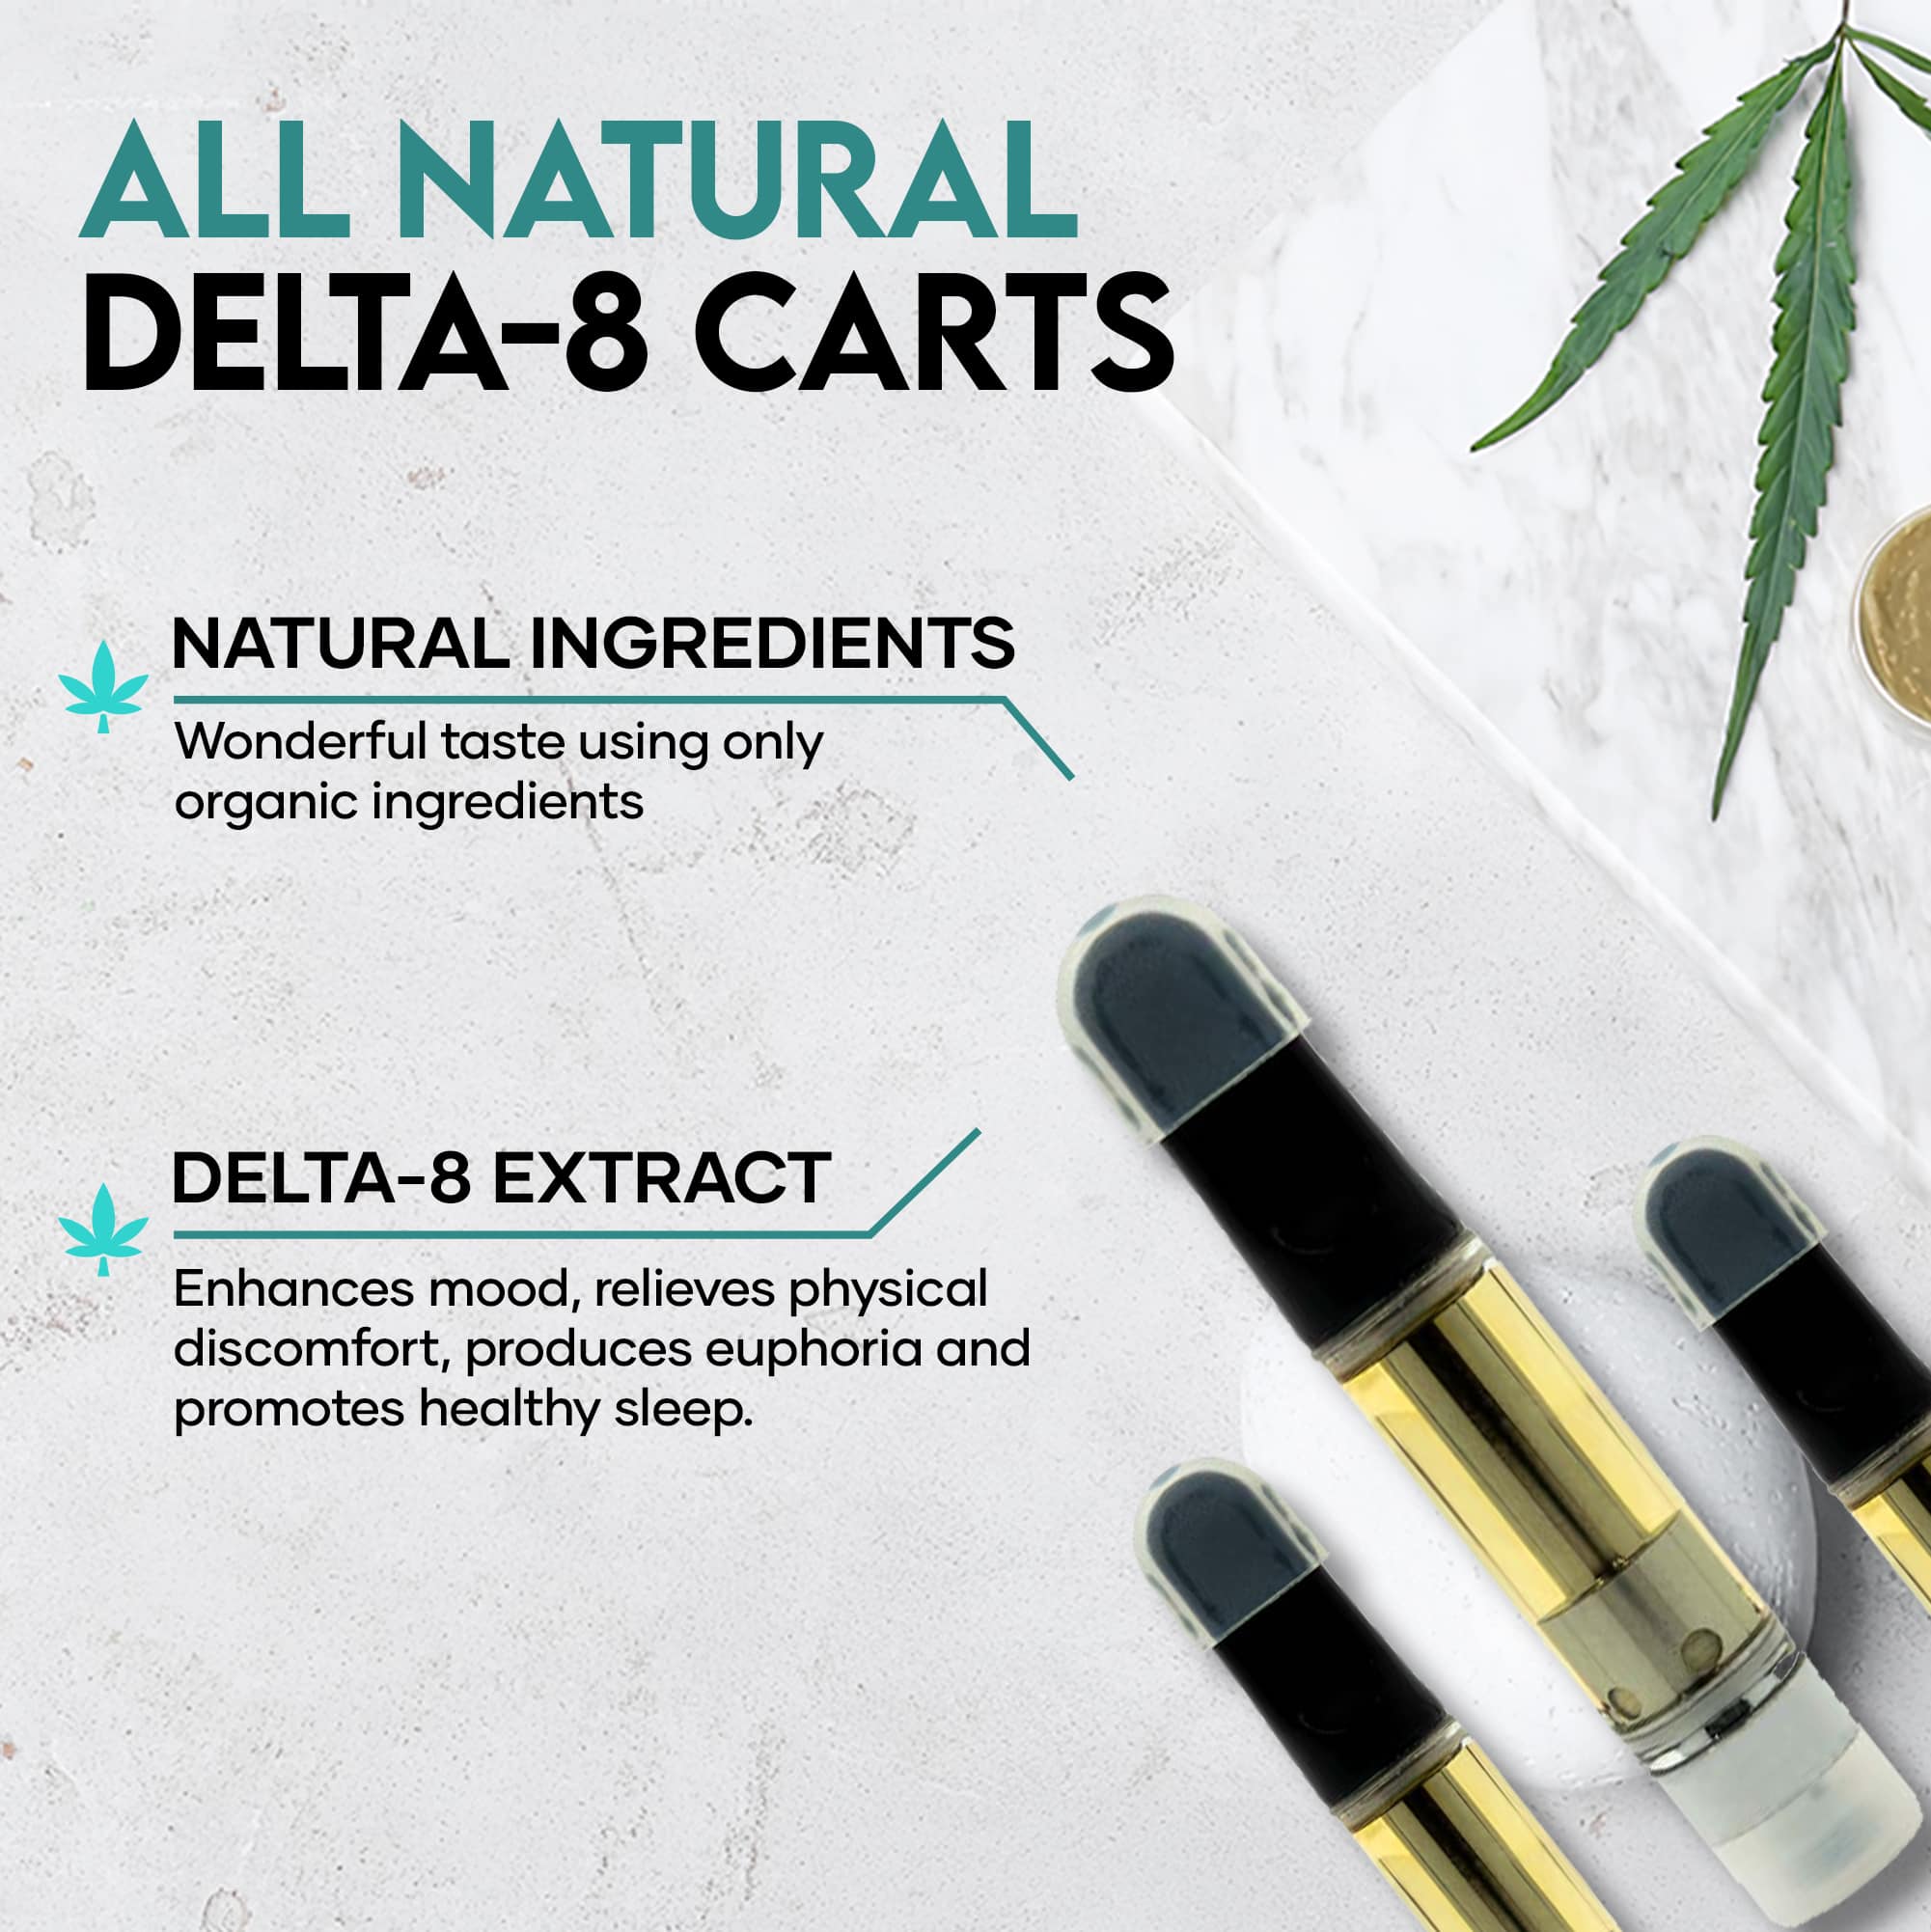 delta 8 cart benefits